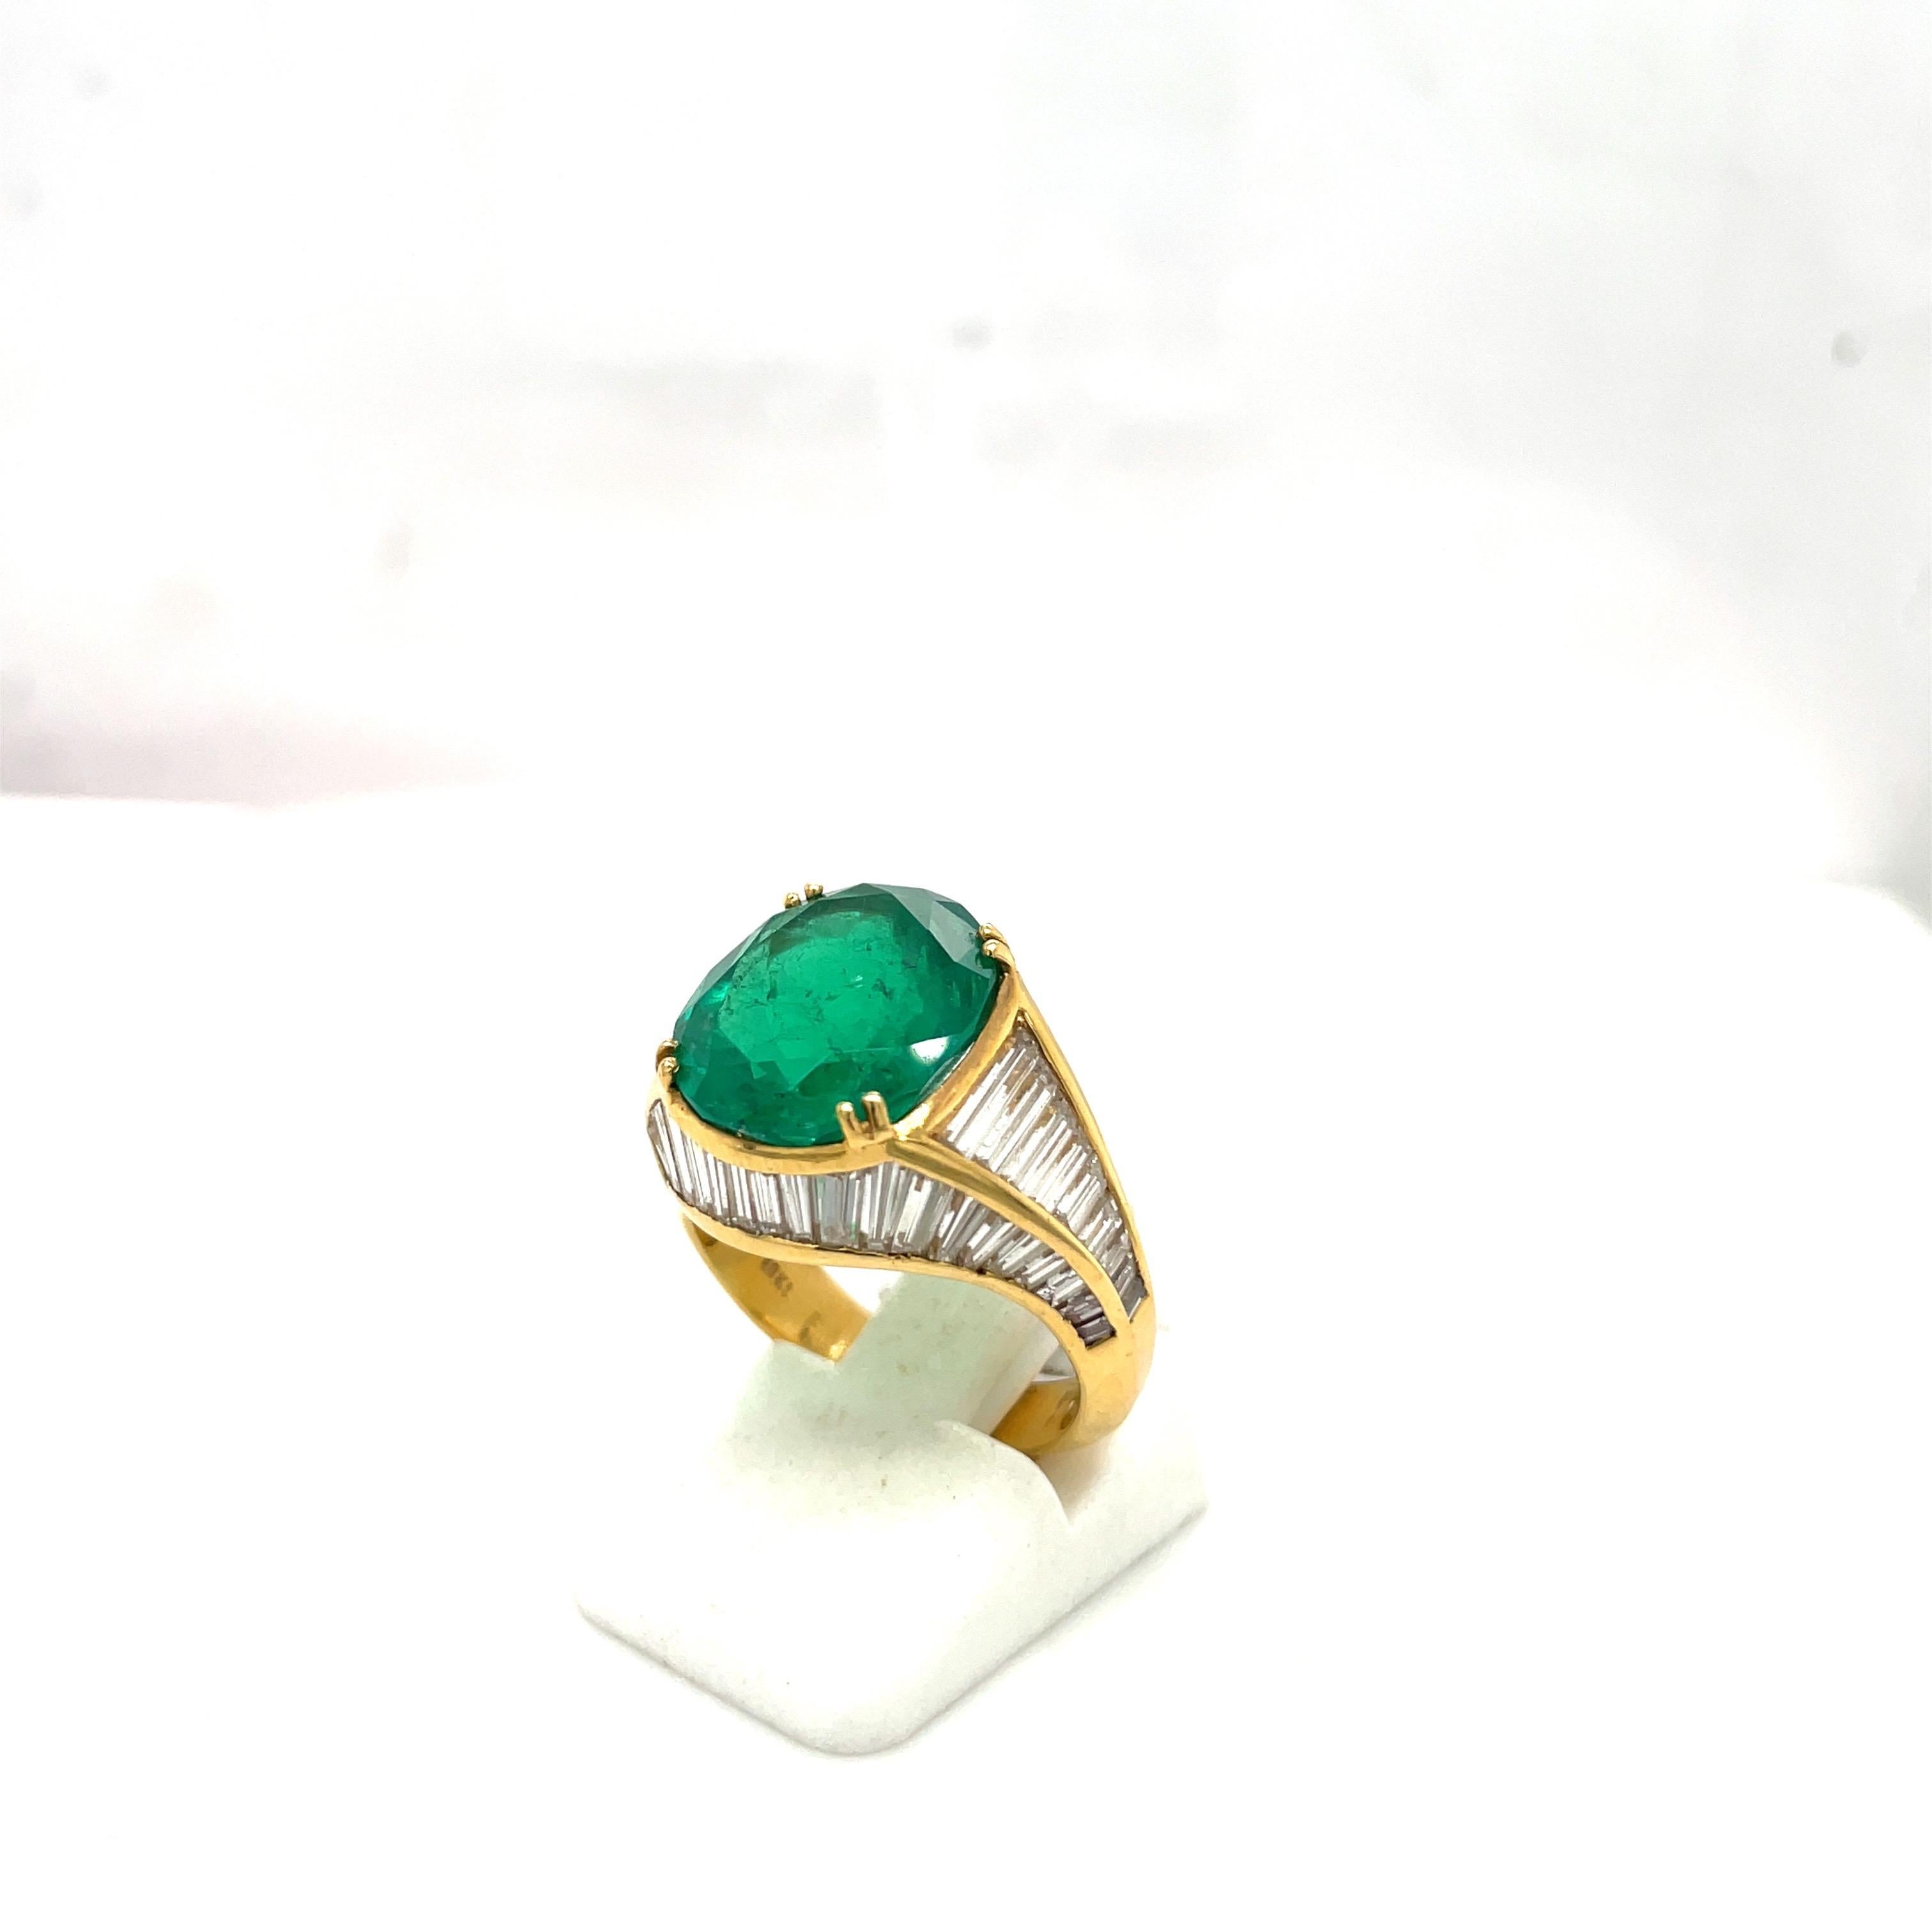 Dieser prächtige Ring aus 18 Karat Gelbgold enthält einen wunderschönen ovalen Smaragd mit einem Gewicht von 6,00 Karat. 3,23 Karat Diamanten im Baguetteschliff bilden die einzigartige, thronartige Fassung. Die Schönheit dieser Fassung liegt in der